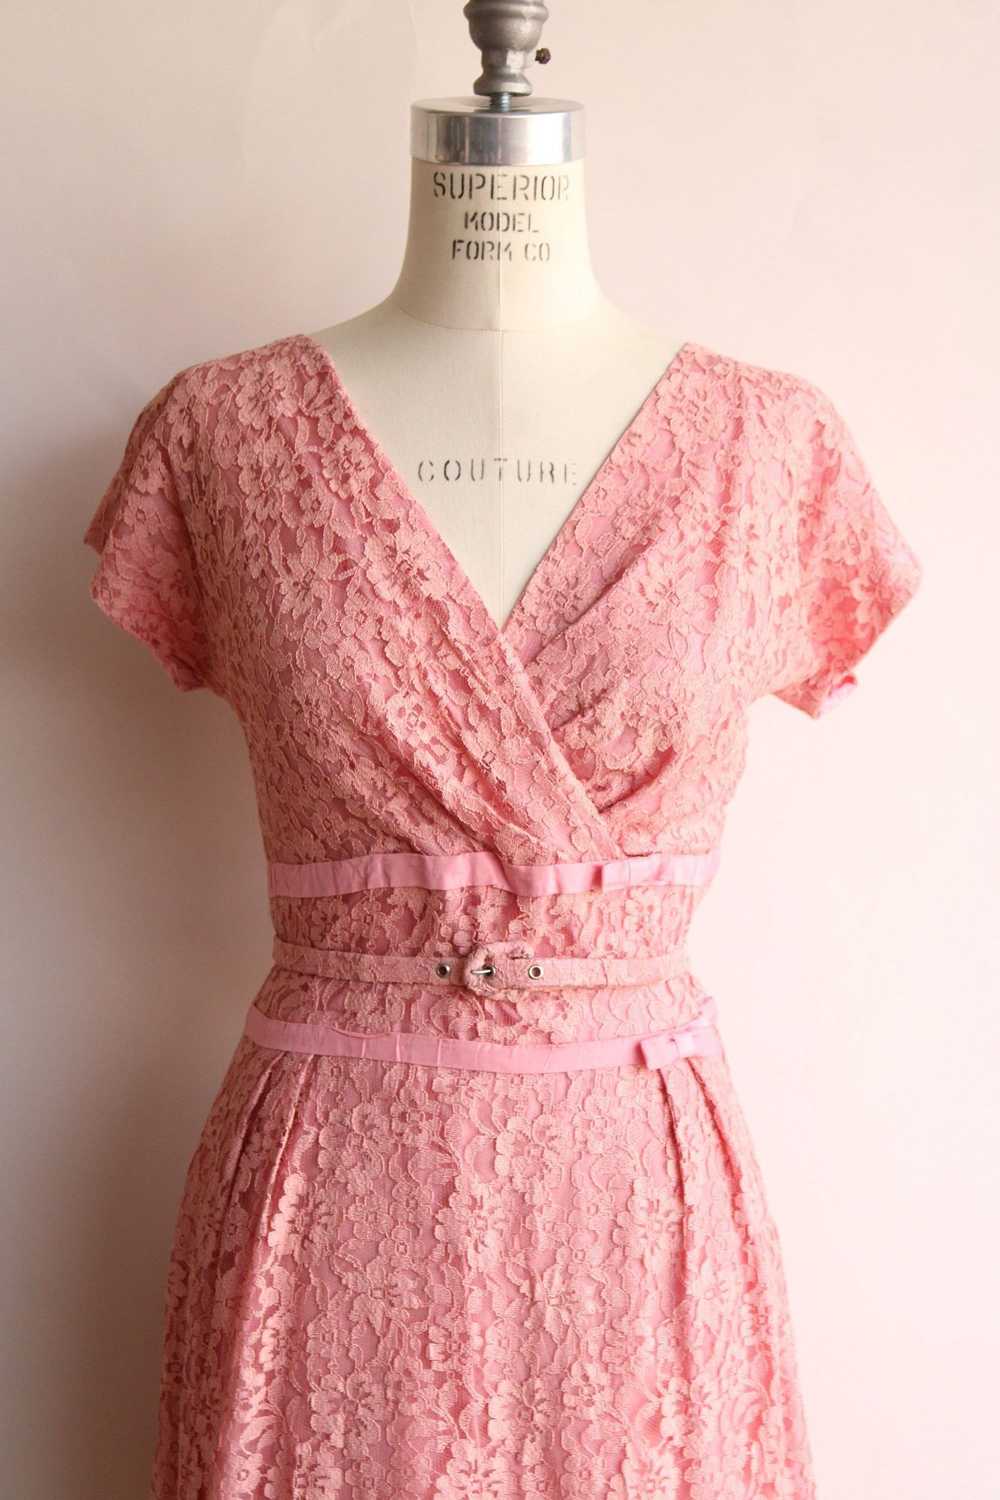 Vintage Vintage 1940s 1950s Dress with Belt, Pink… - image 3